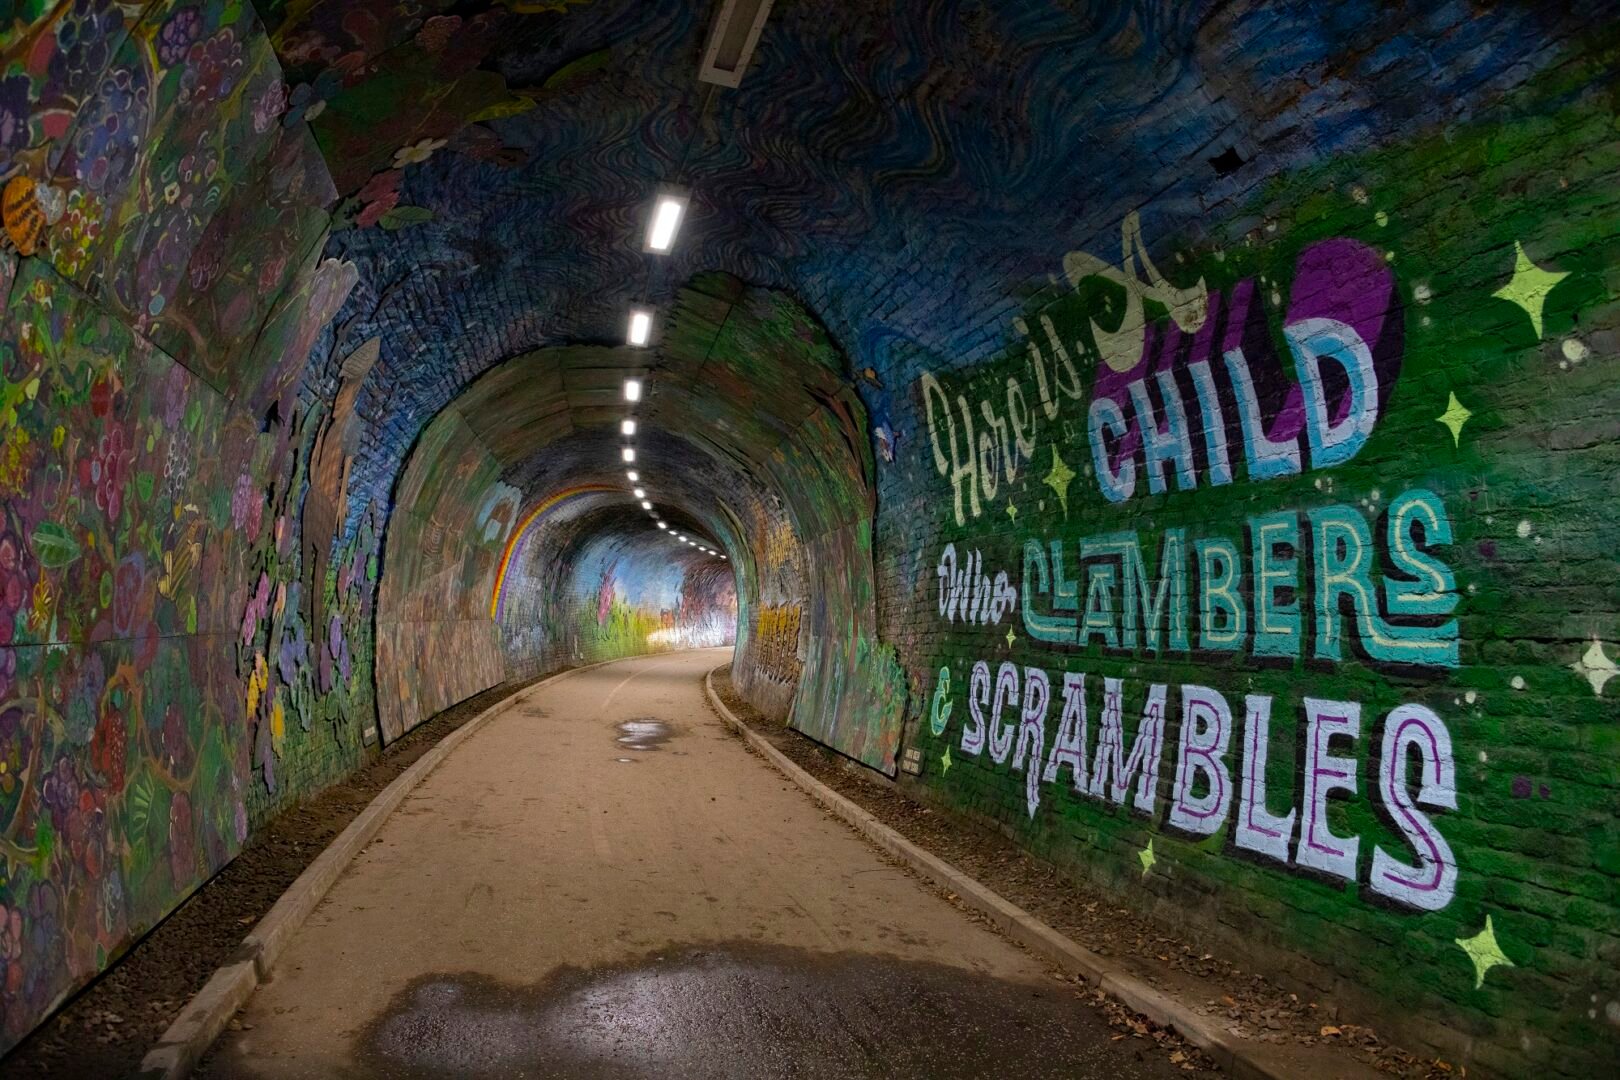 Colinton Tunnel